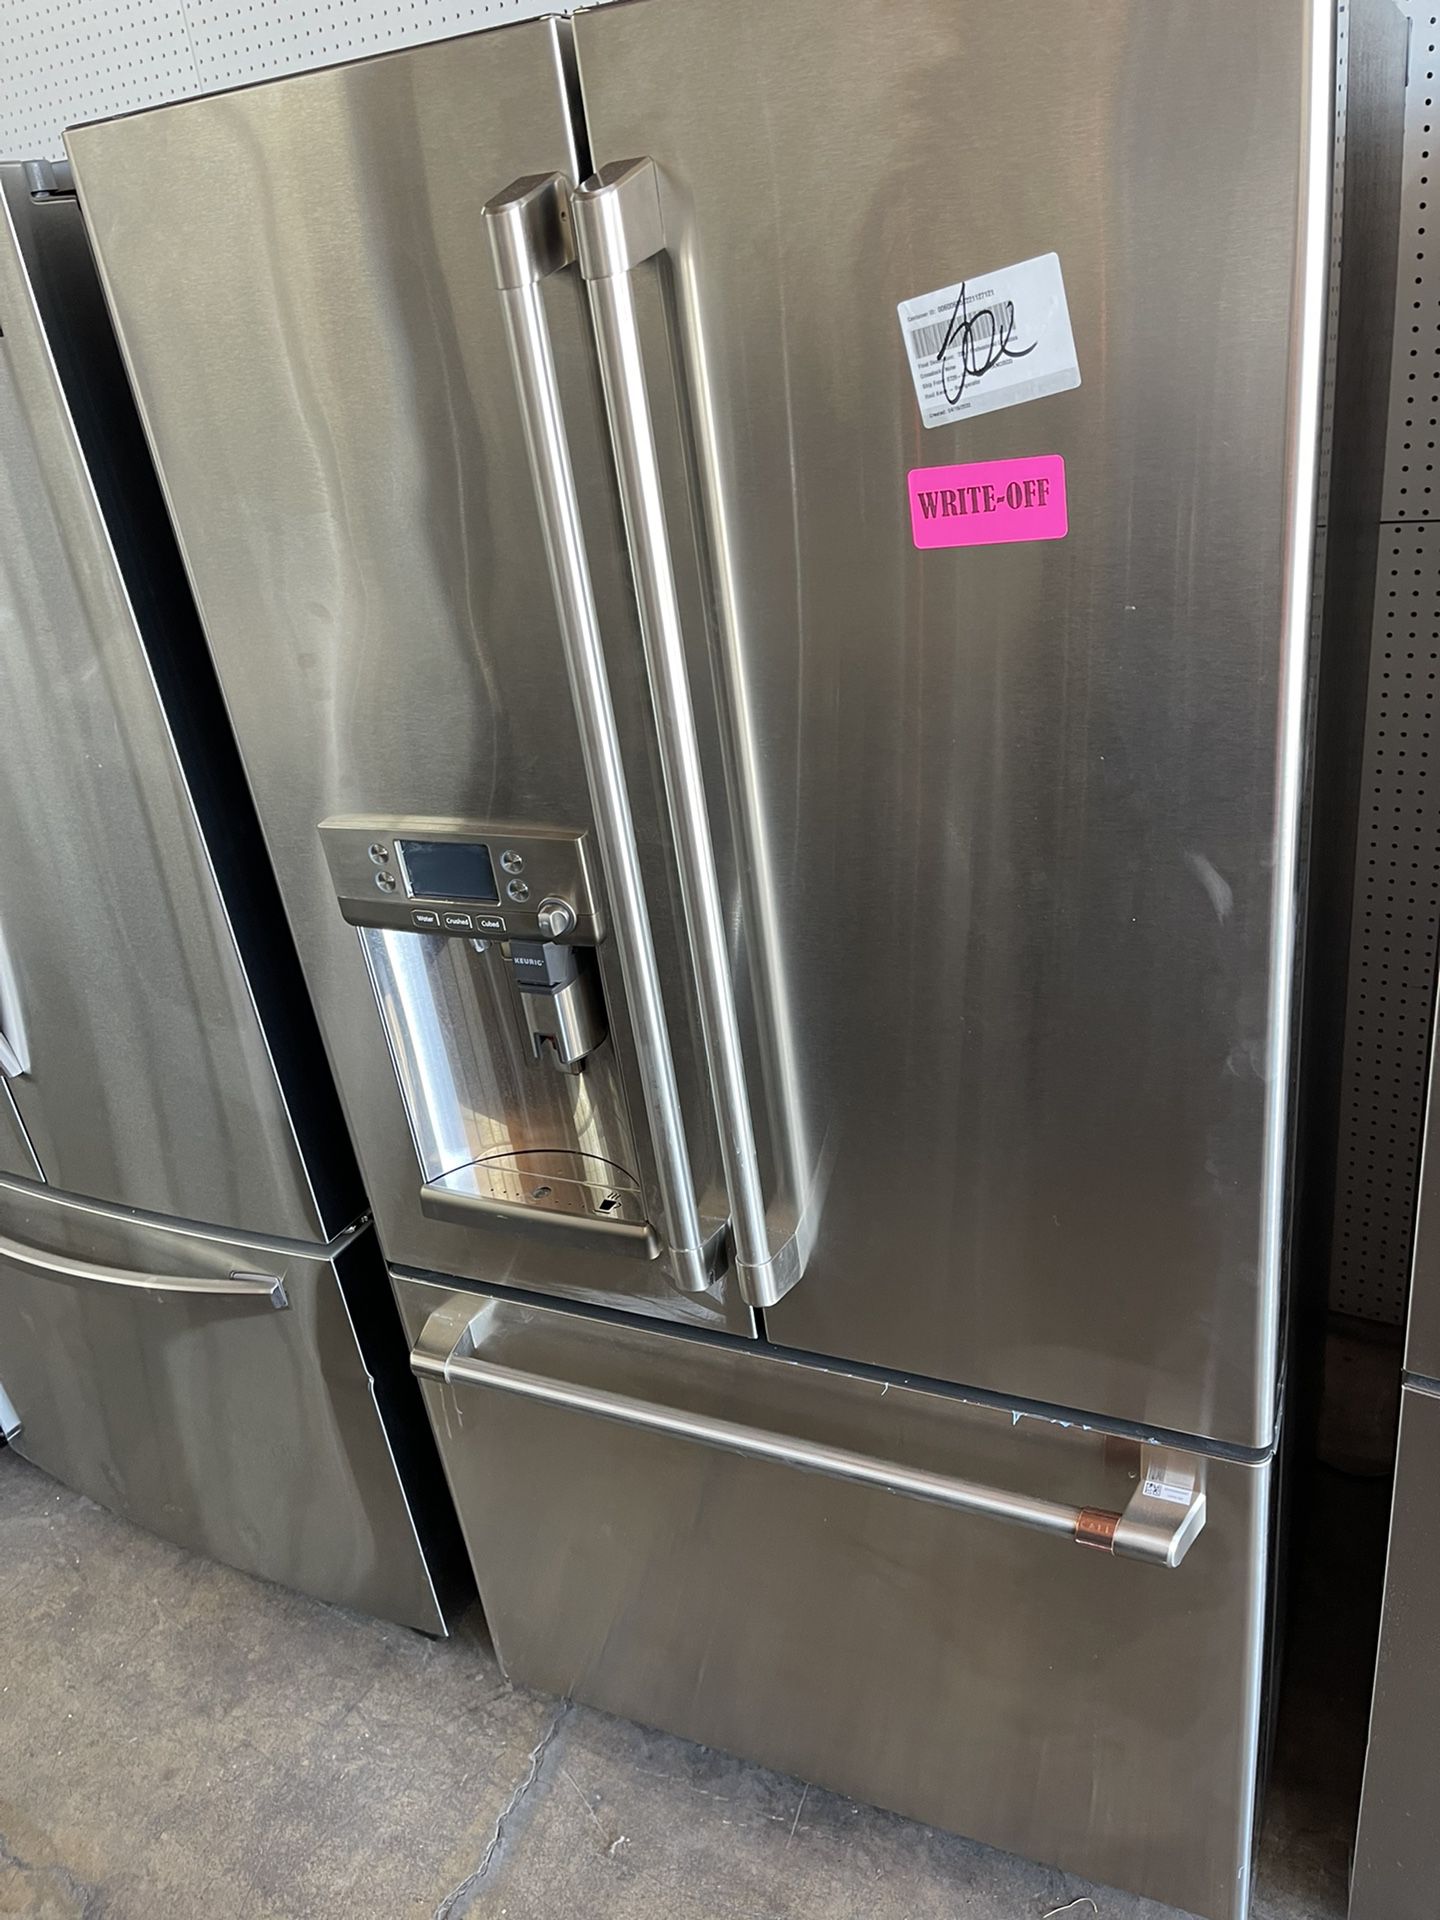 GE French door refrigerator with Keurig